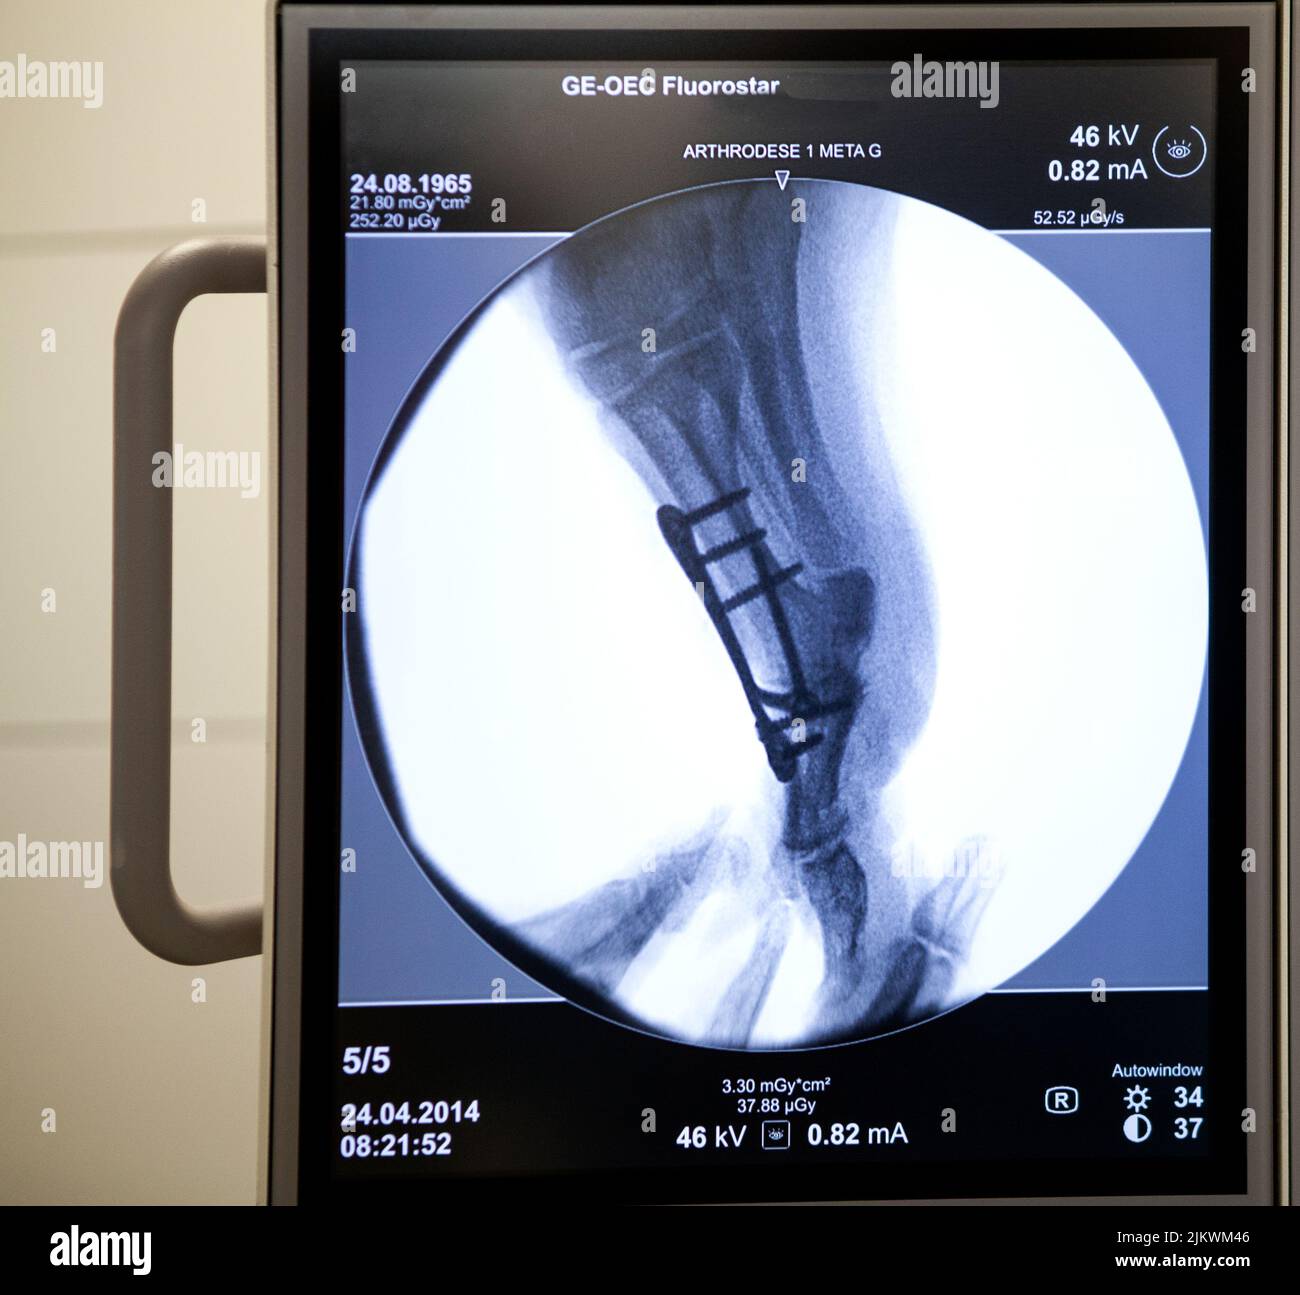 Bericht an die orthopädische Chirurgie der Krankenhäuser Léman in Thonon. Operationssaal. Röntgenaufnahme des Fußes eines Patienten, der gerade eine Arthrodese des großen Zeh hatte. Stockfoto